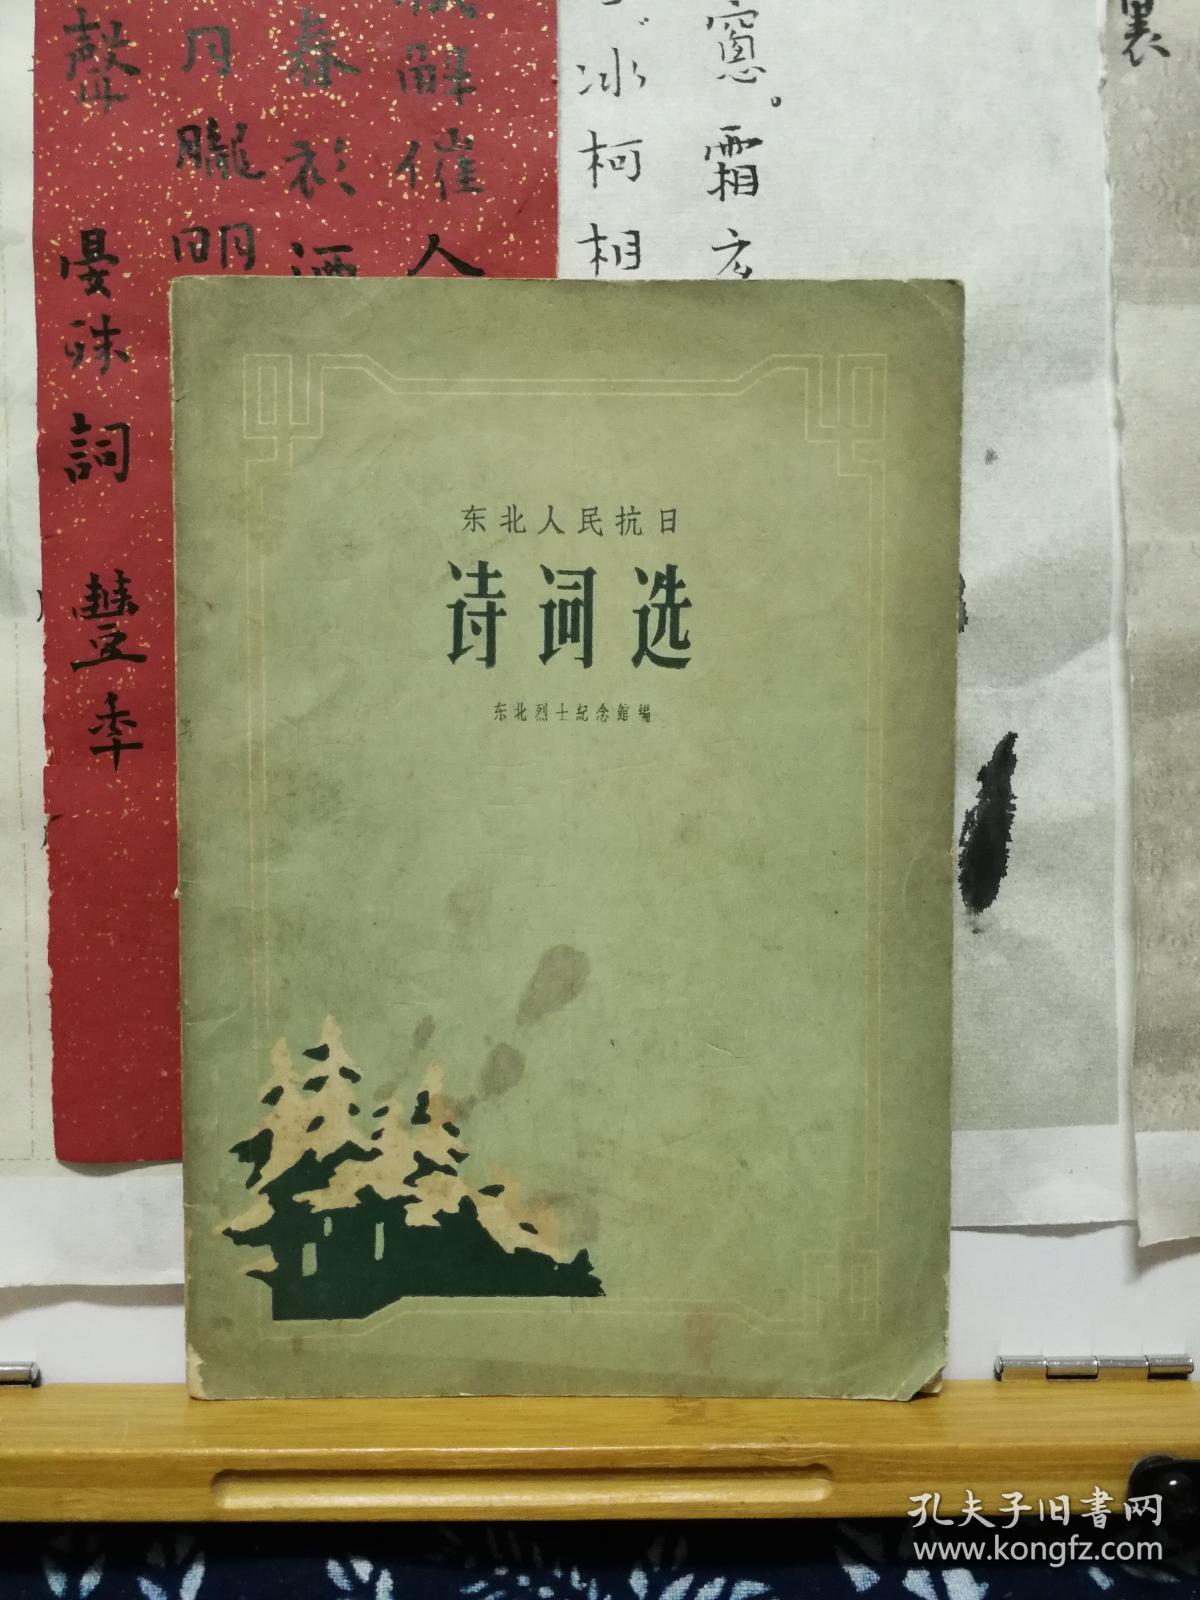 诗词选 东北人民抗日  62年印本  品纸如图  书票一枚 便宜3元